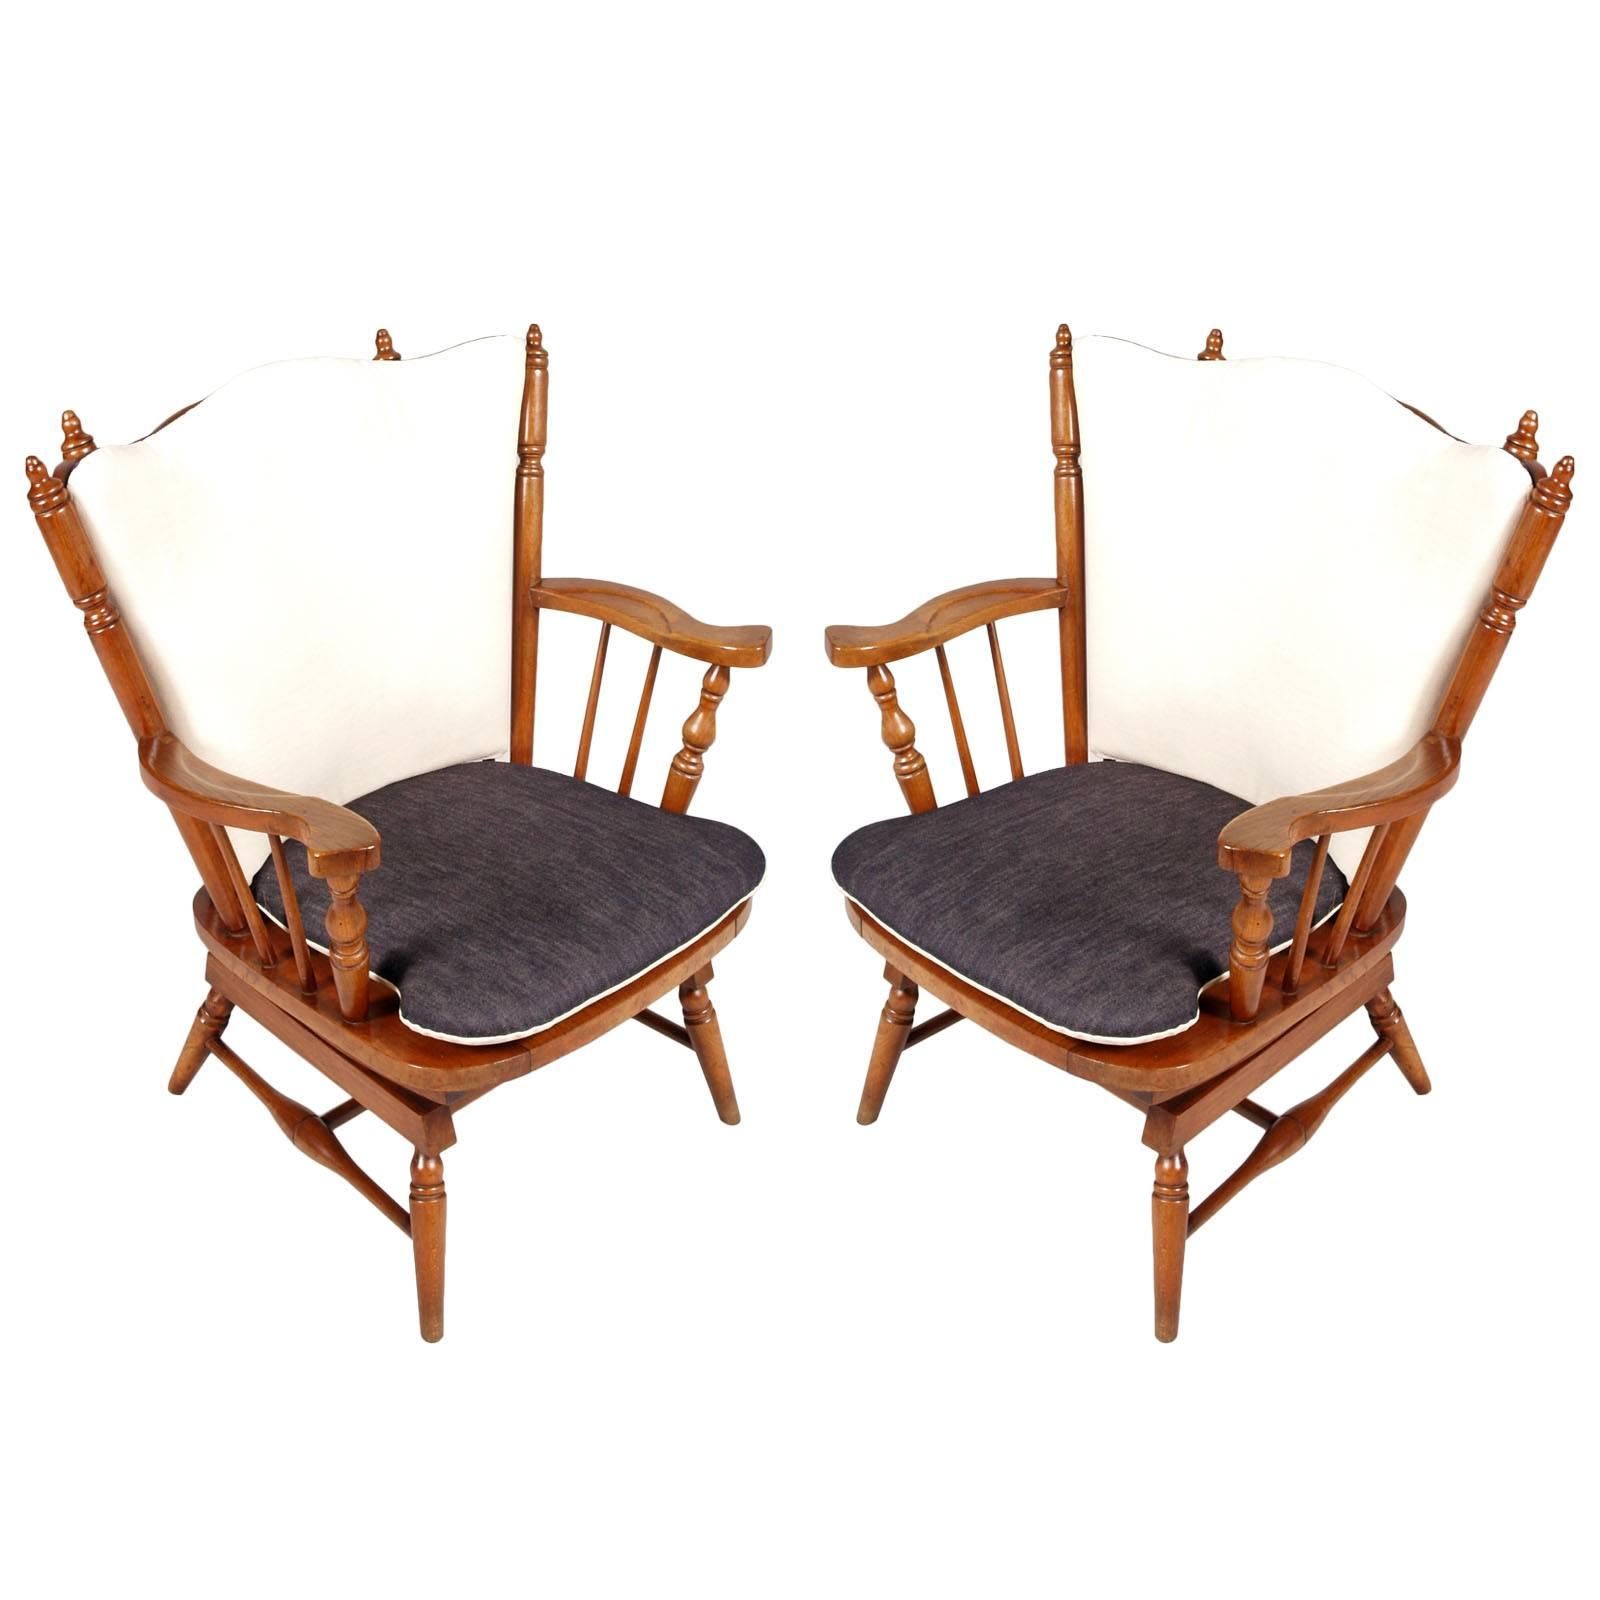 Paire de chaises à bascule Chiavari des années 1930 avec ressorts, style américain ancien